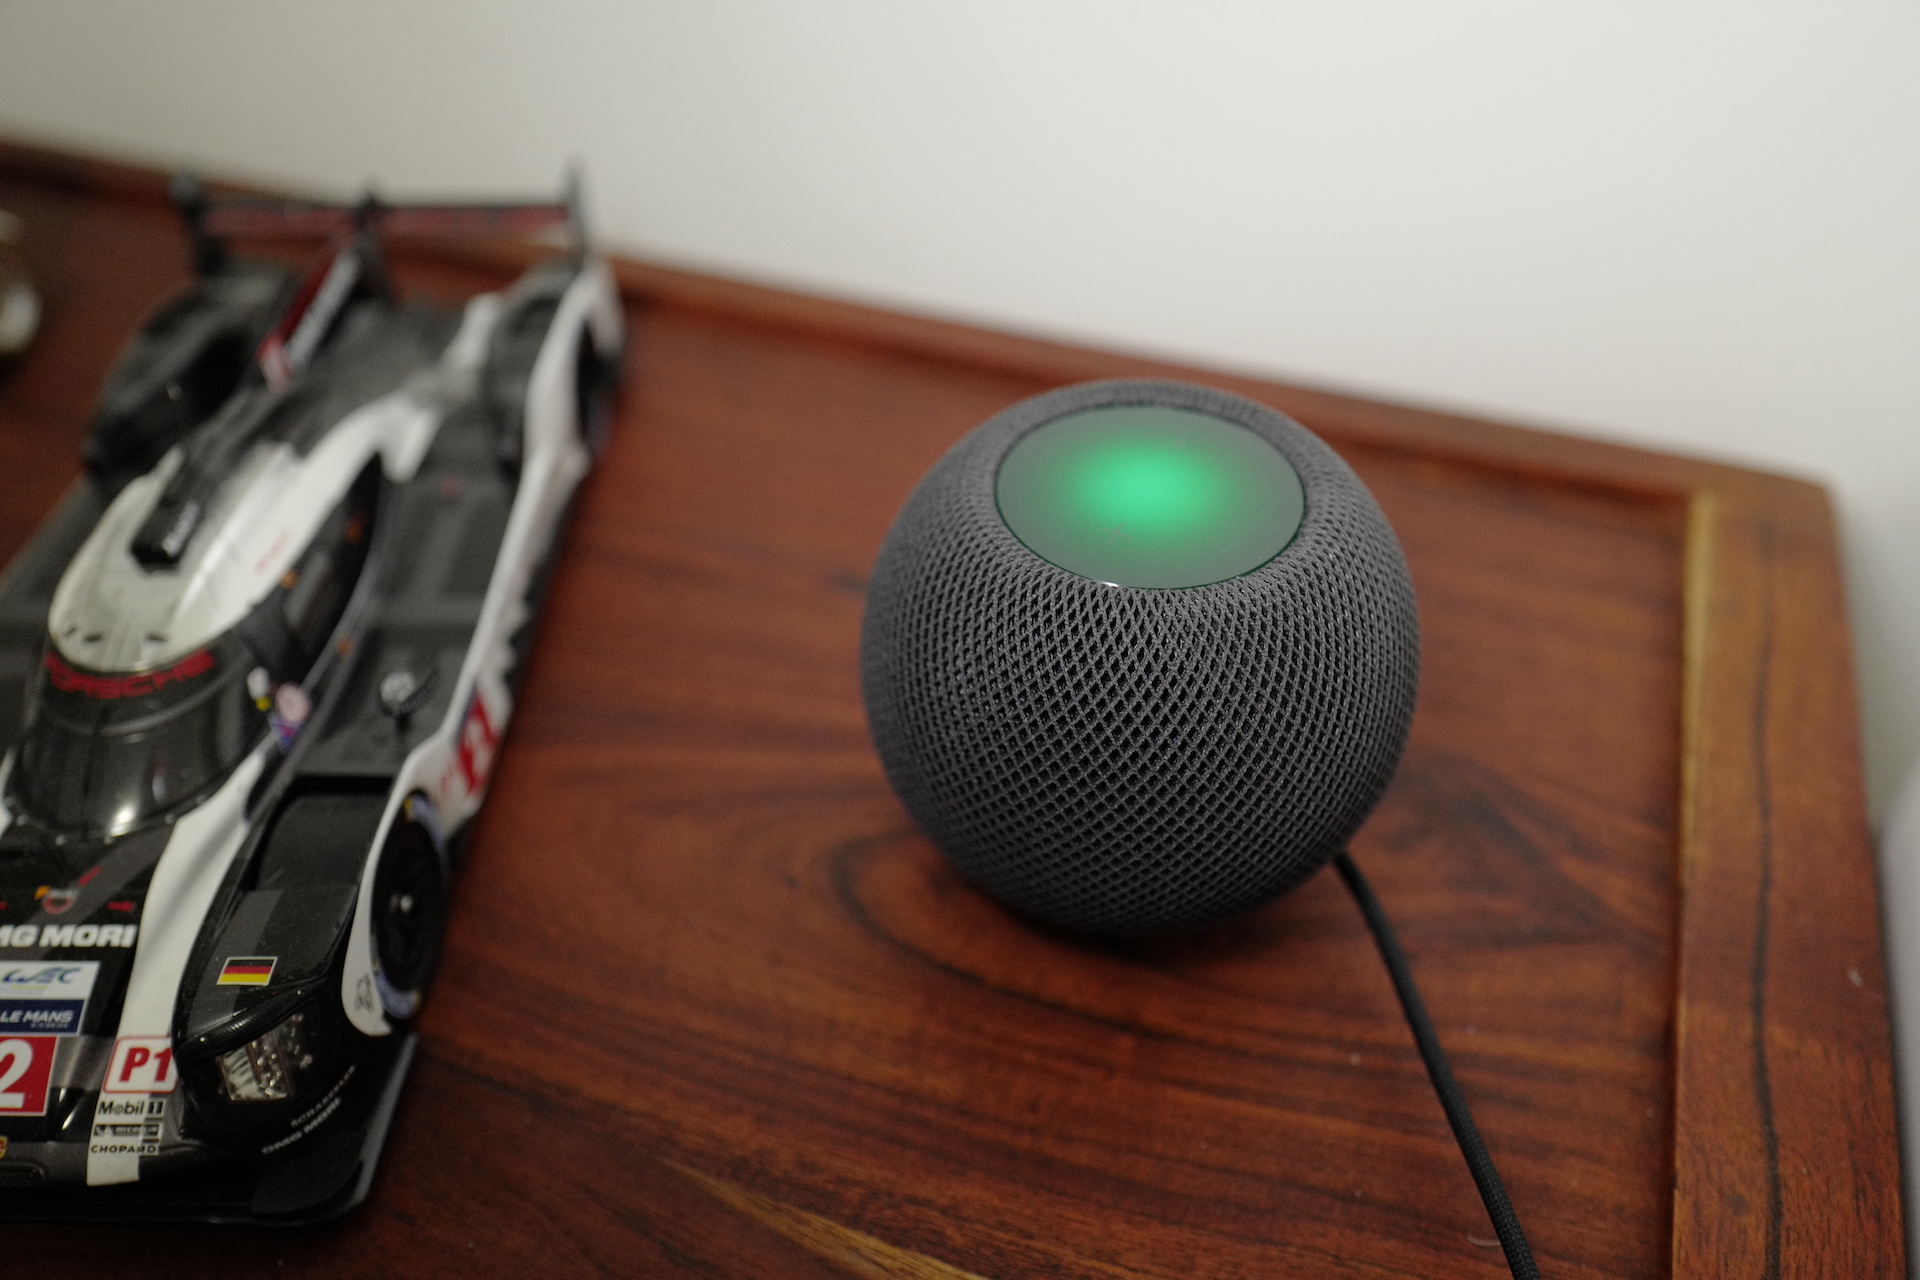 Recenze HomePod mini: Mrňous s excelentním zvukem – Letem světem Applem